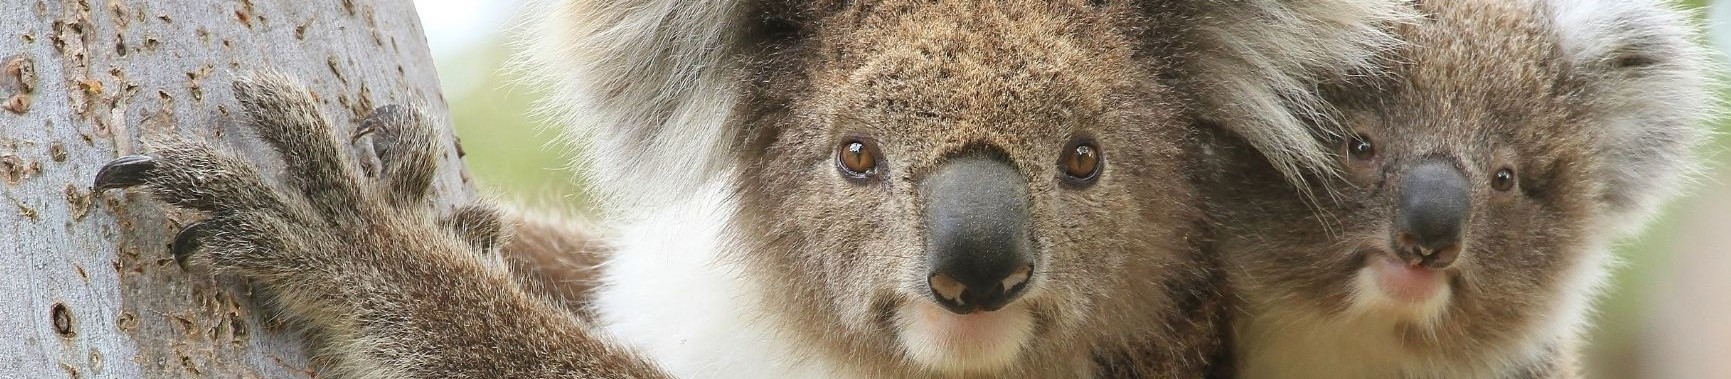 queensland koalas